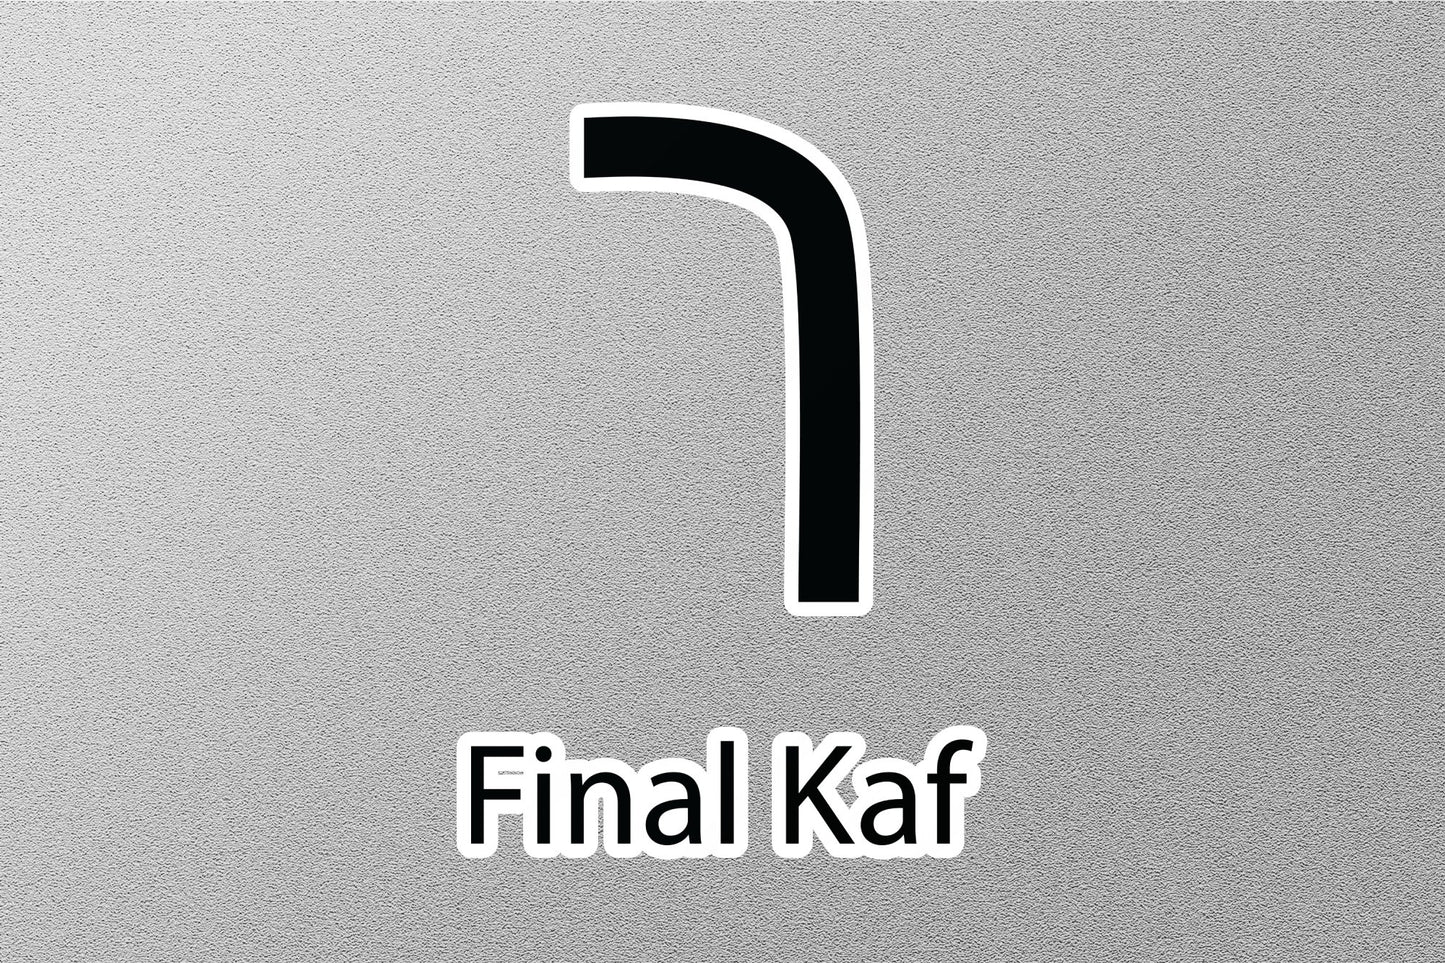 Final Kaf Hebrew Alphabet Sticker